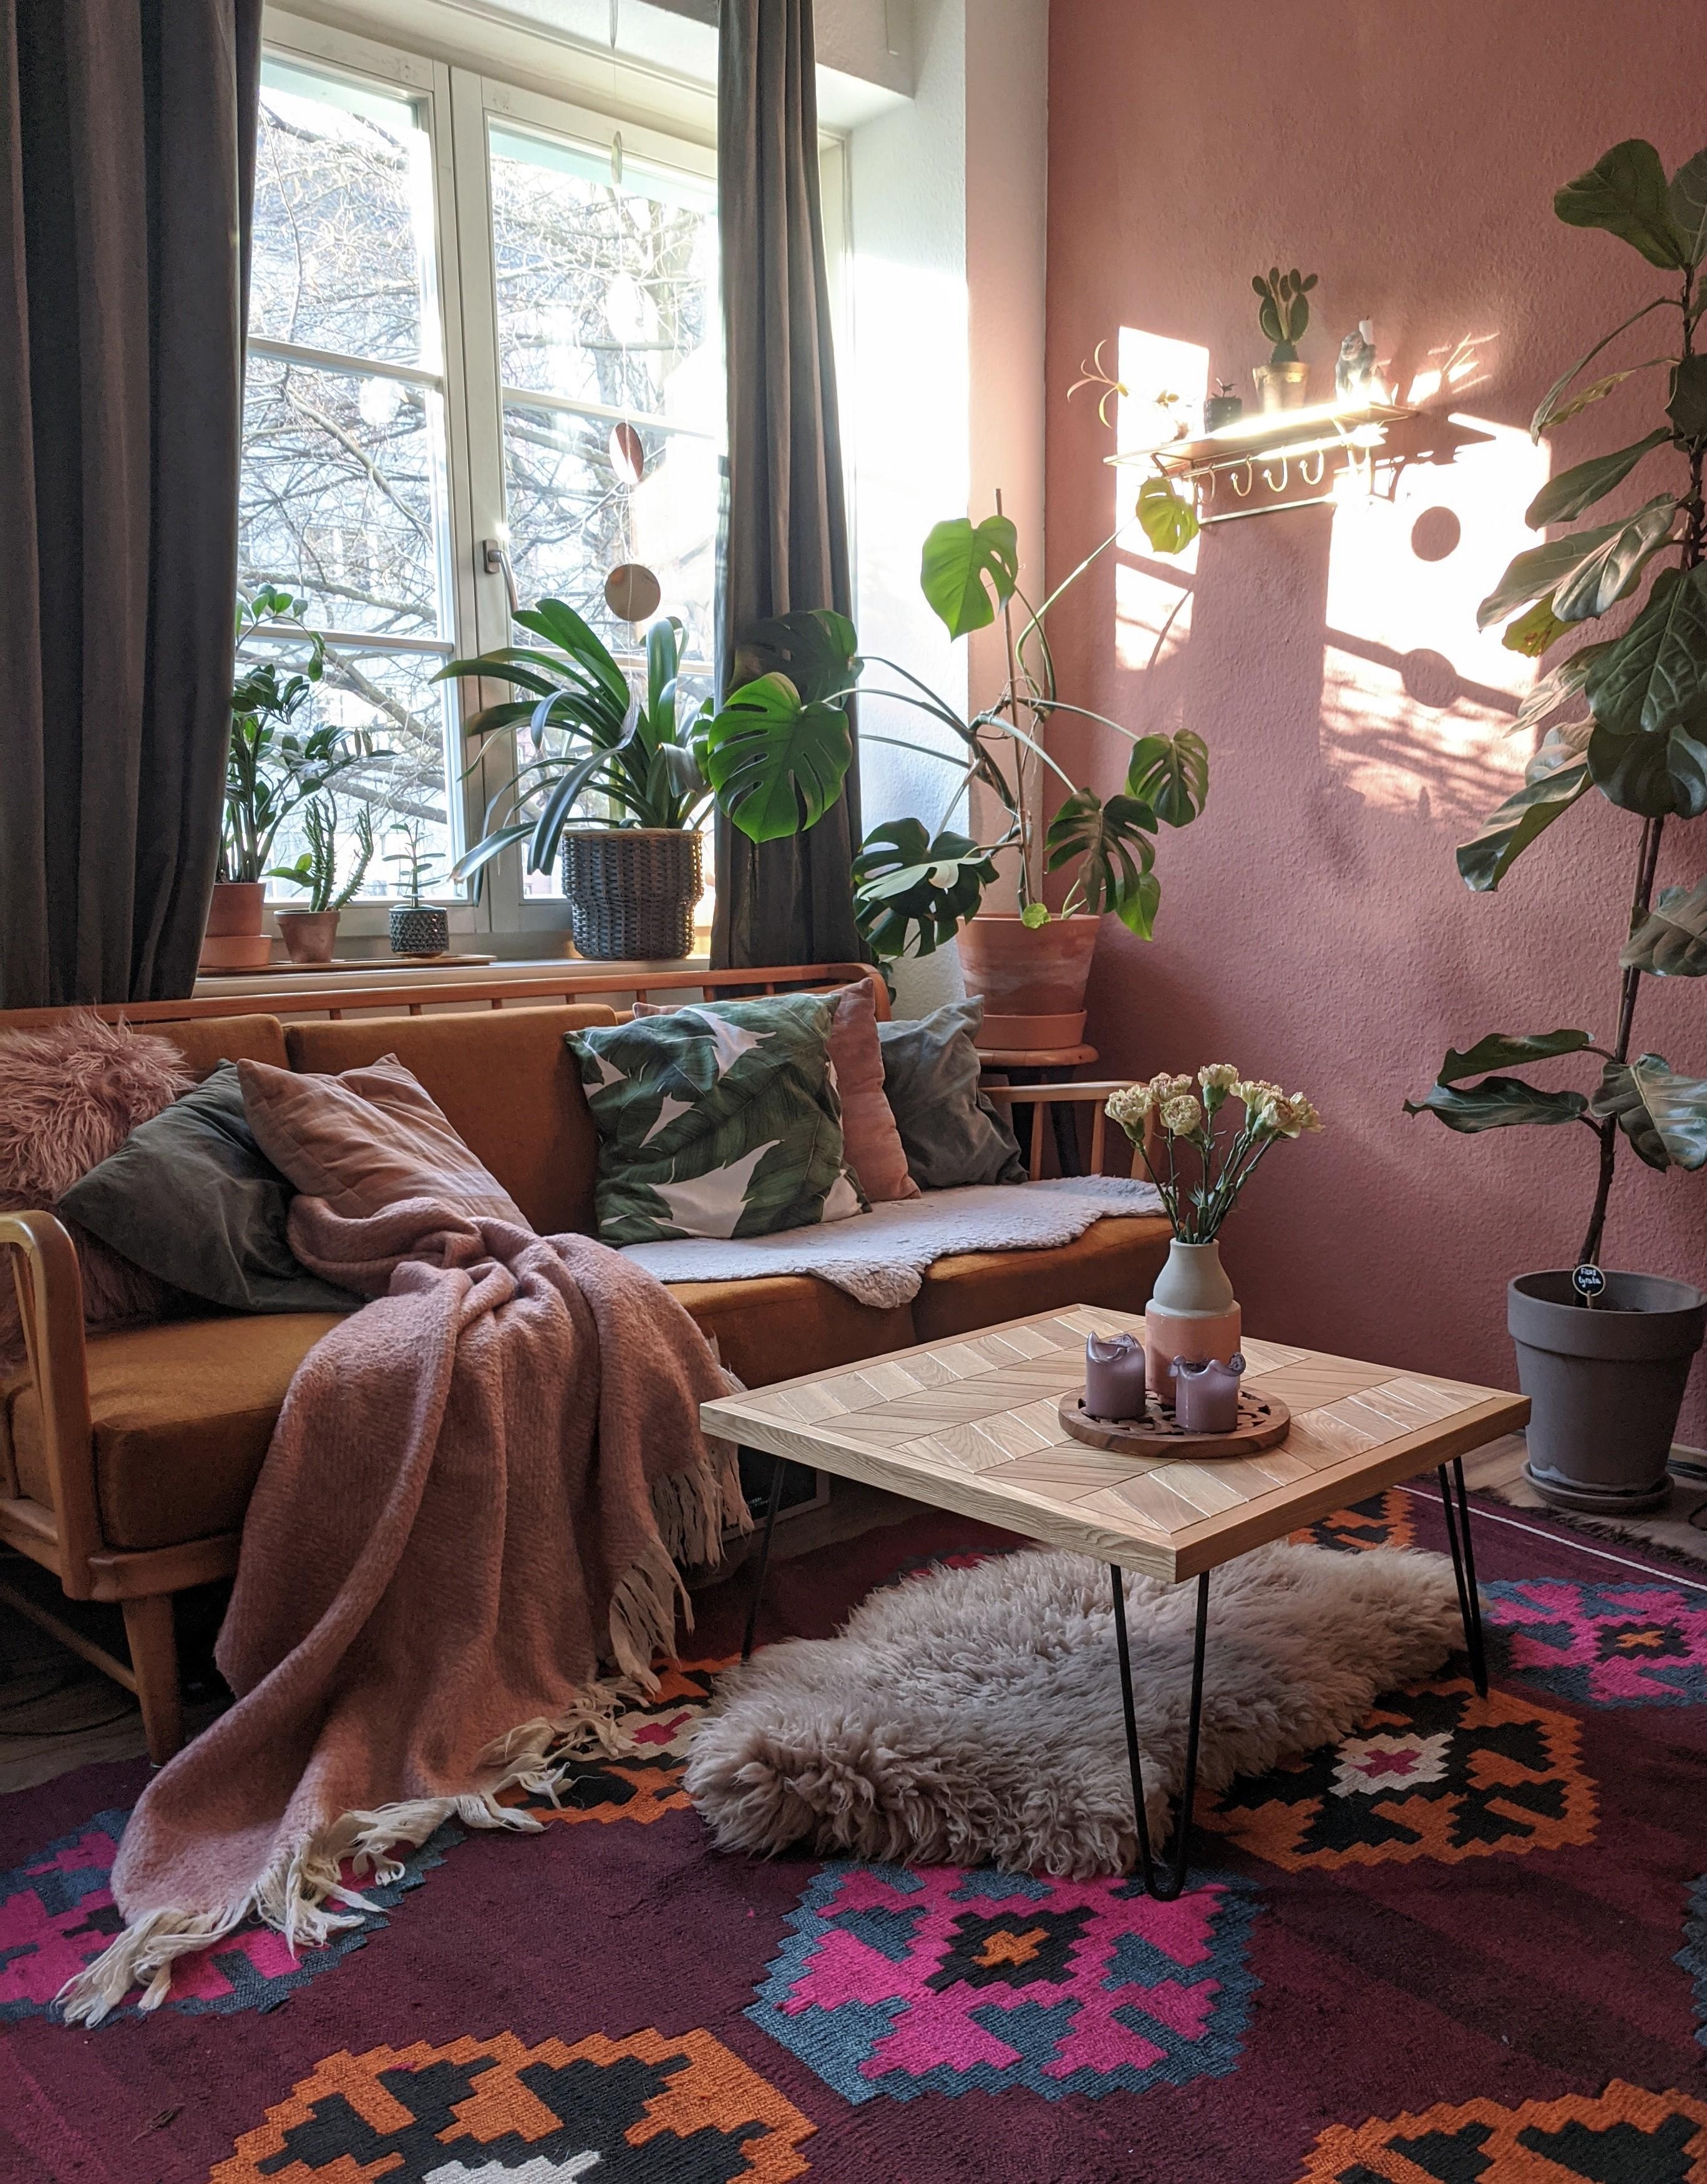 Sonne 🌞 #wohnzimmer #couch #pflanzenliebe #boho #cozy #monstera #wandfarbe #teppich